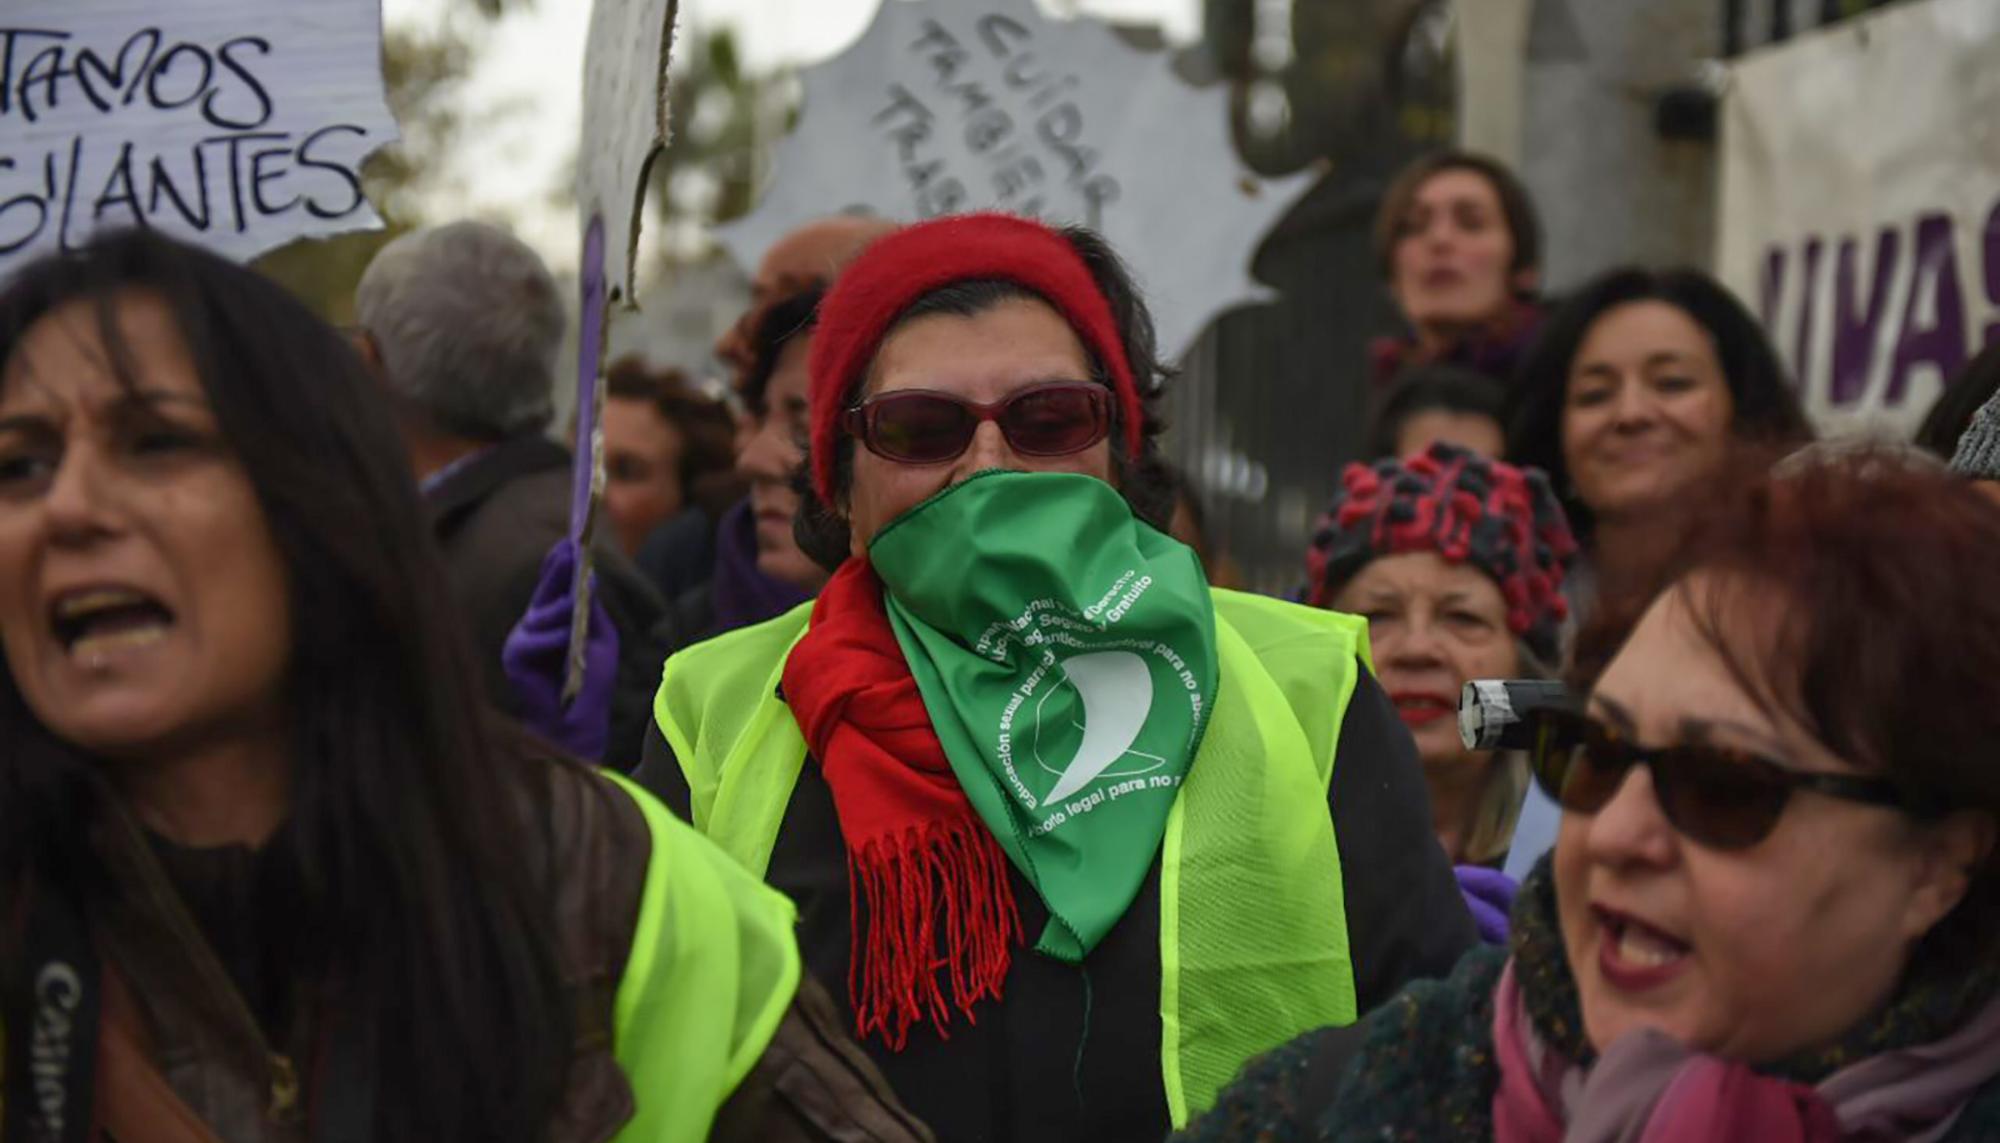 Concentracion feminista en el Parlamento andaluz 3